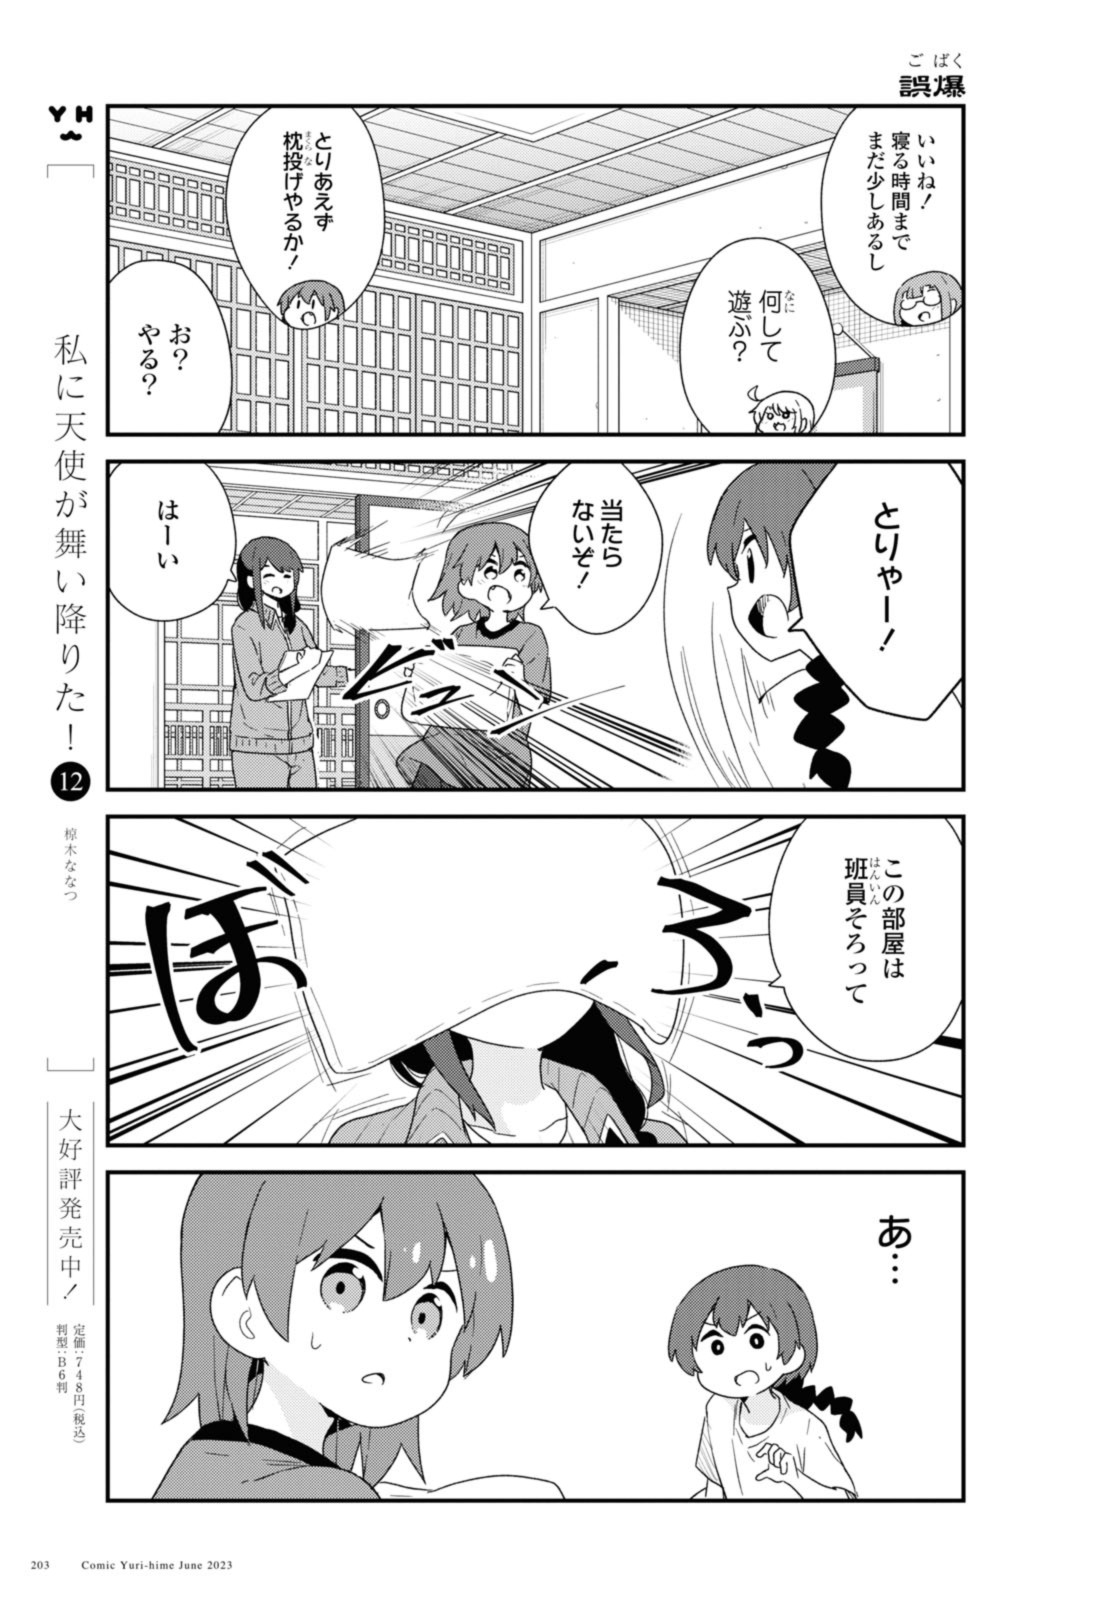 Watashi ni Tenshi ga Maiorita! - Chapter 106 - Page 3